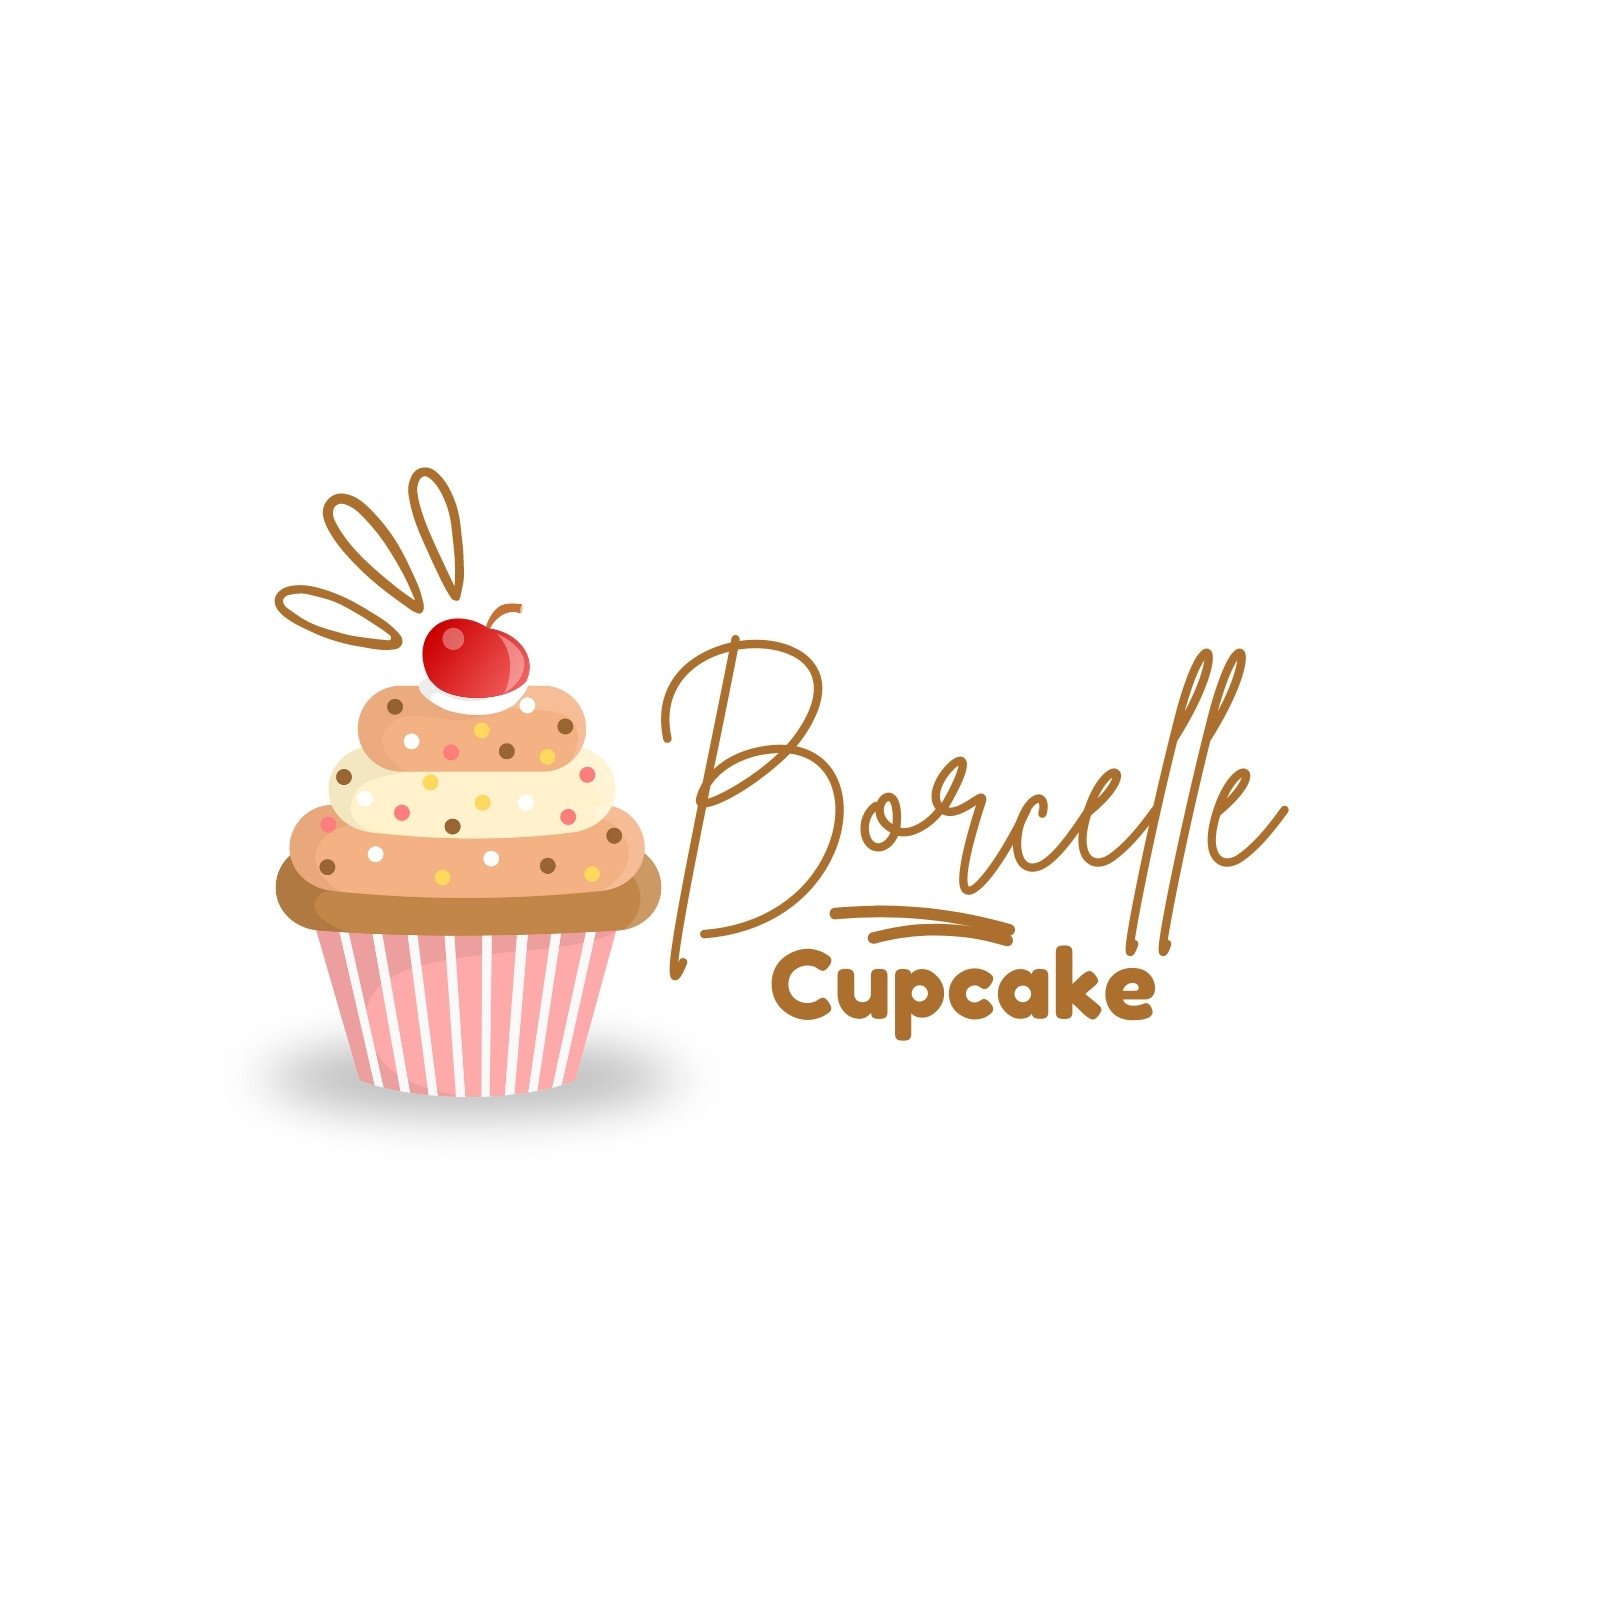 Custom Logo Design Cupcake, Branding Package, Gold Crown Cupcake Logo,  Muffin Cupcake, Bakery Logo Watermark, Graphic Design, Vector Logo - Etsy